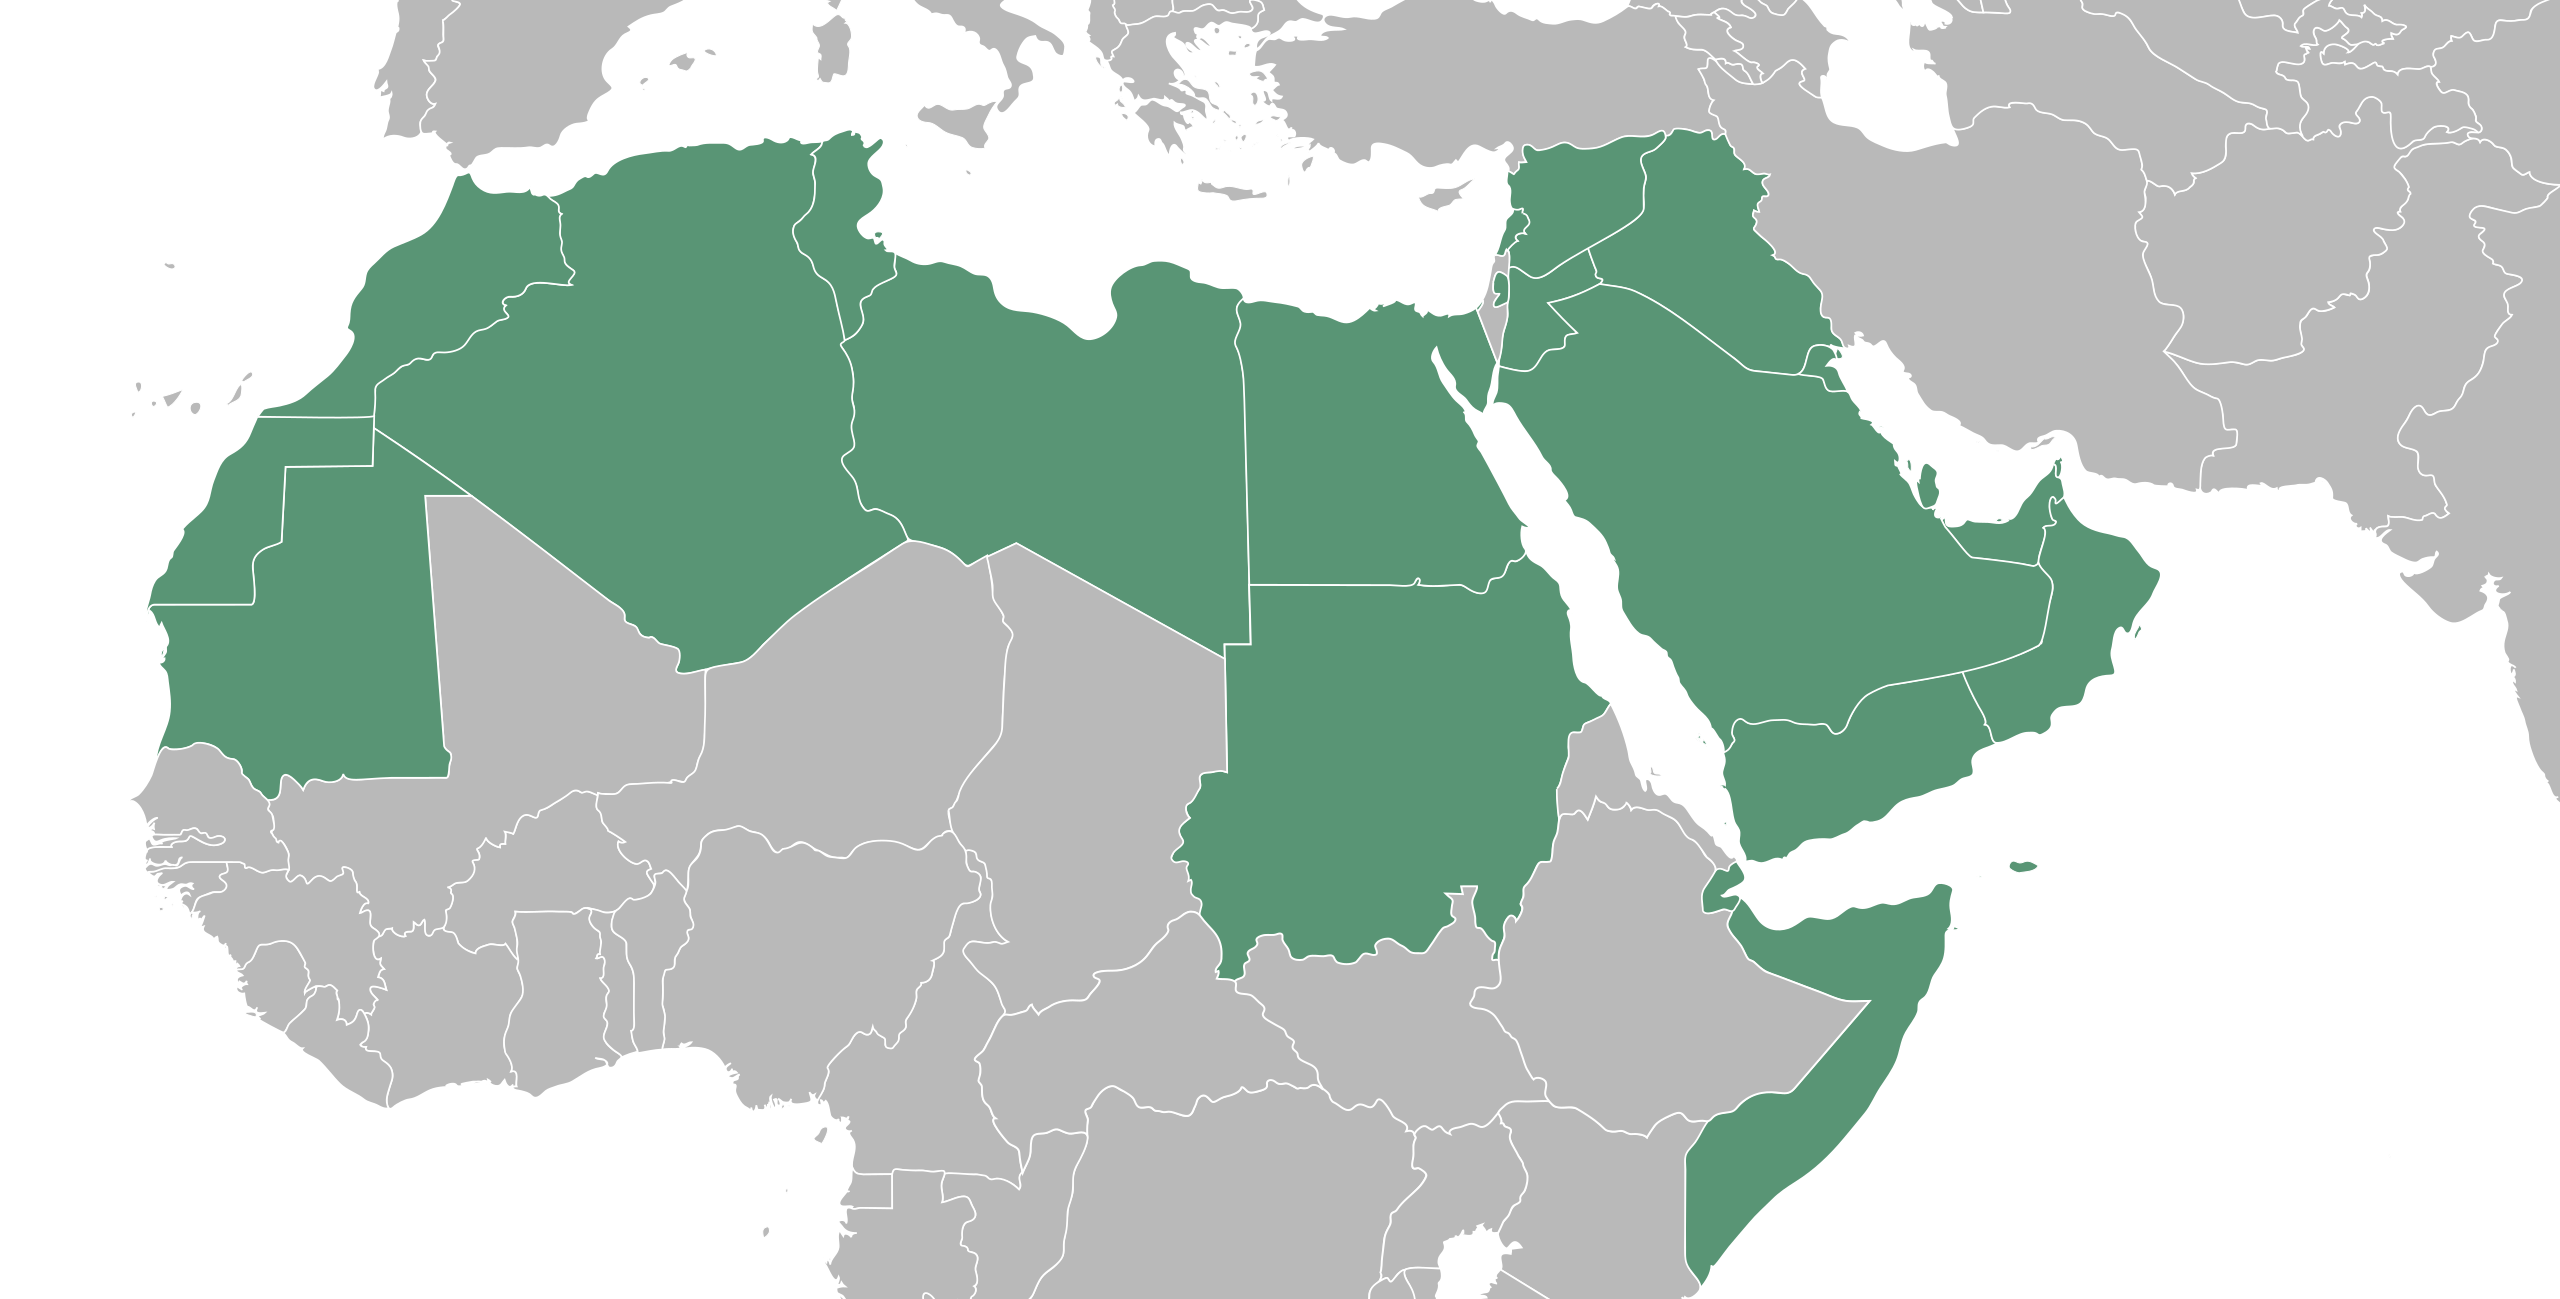 خريطة الدول العربية صماء وملونة باللون الأخضر